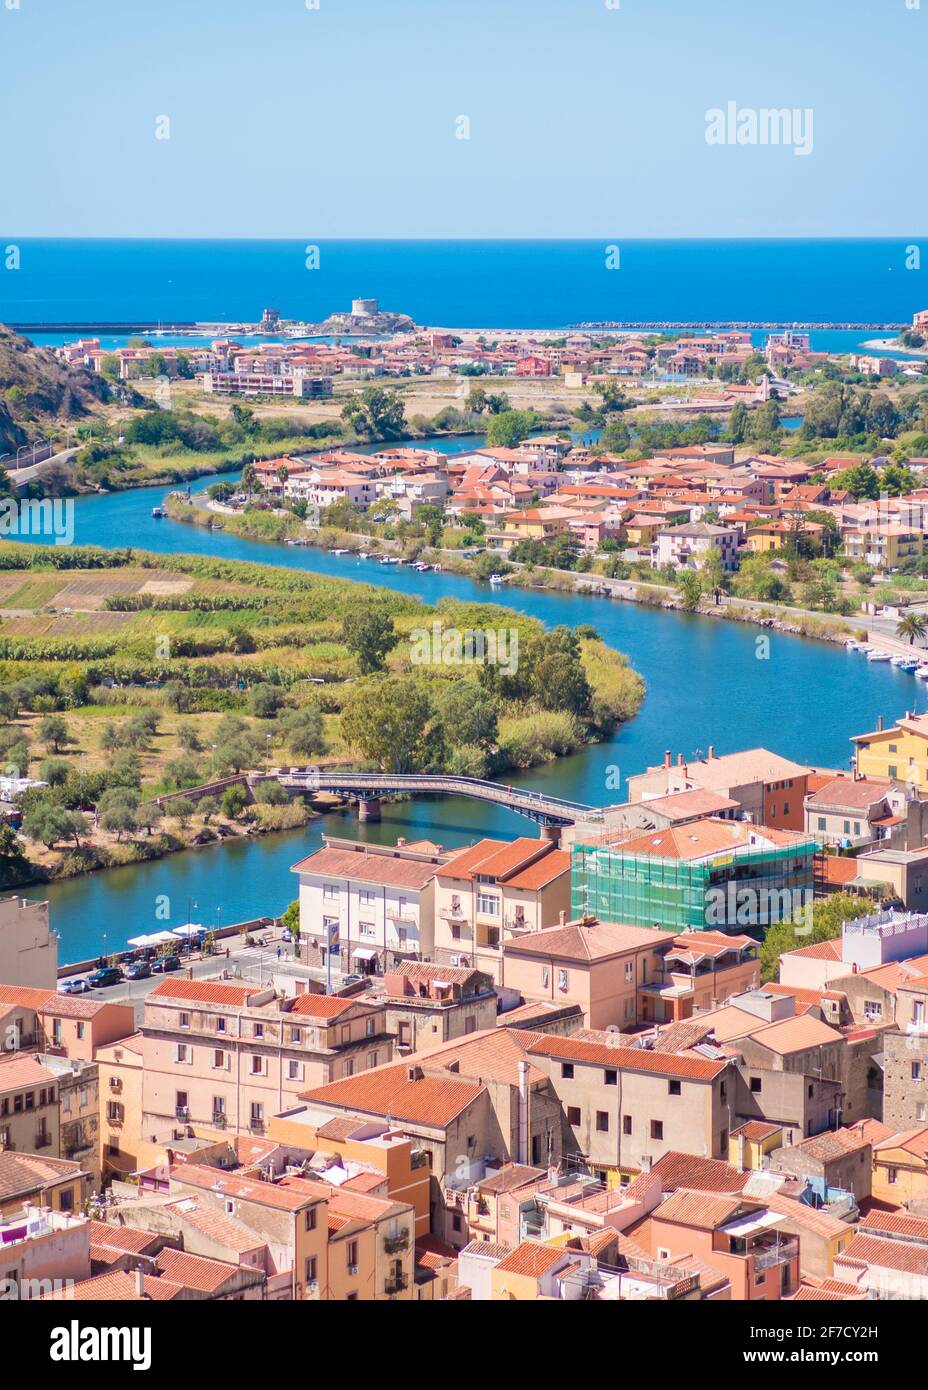 Bosa (Sardinien, Italien) - EIN Blick auf die touristische und charmante bunte Altstadt an der Meeresküste von Oristano, einer der schönsten auf Sardegna Stockfoto